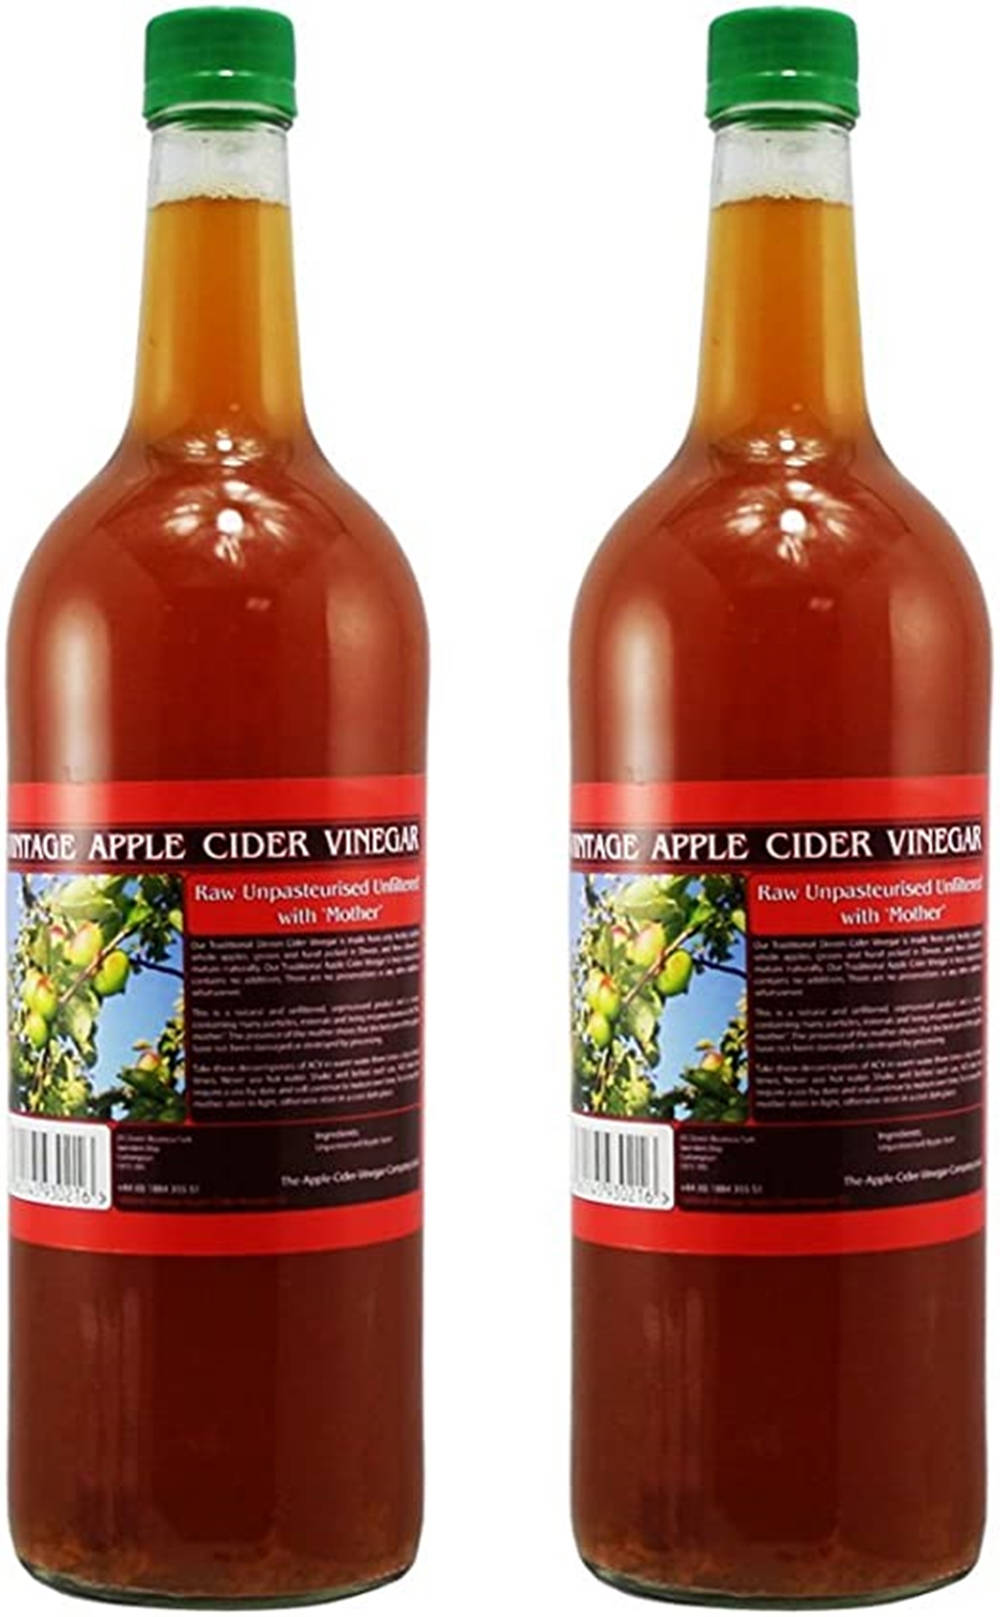 Vintage Apple Cider Vinegar With 'mother' Background